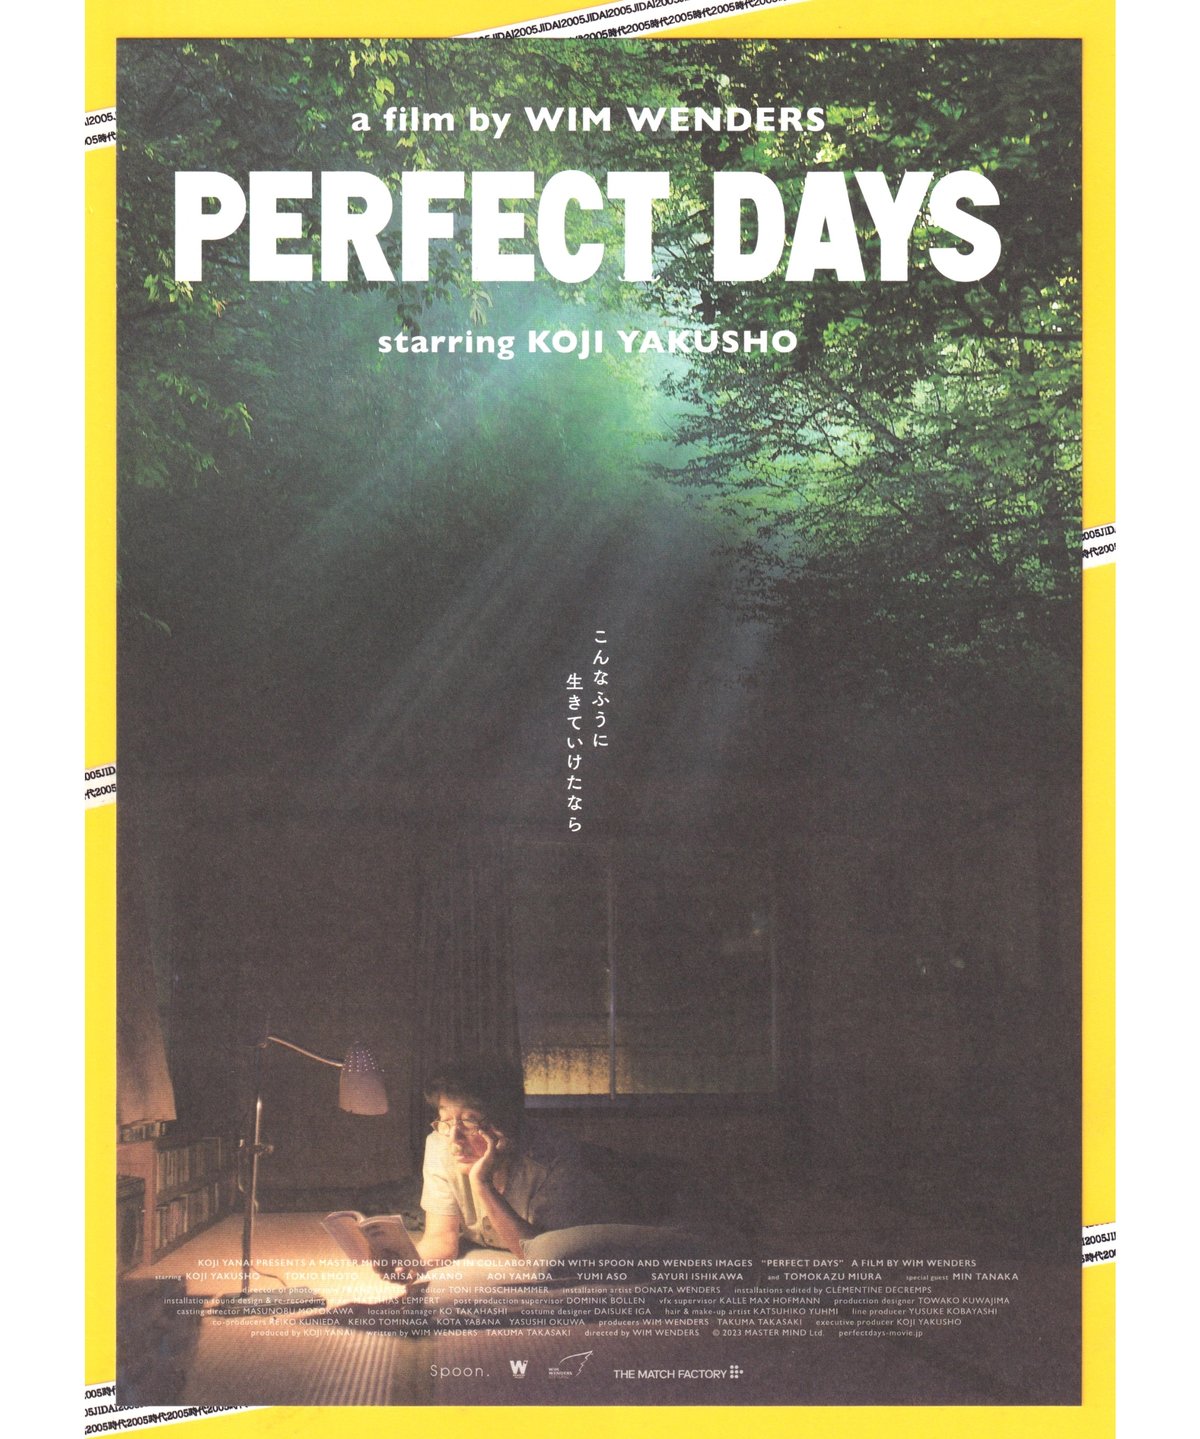 ヴィム・ヴェンダース PERFECT DAYS パンフレット チラシ付き - 印刷物